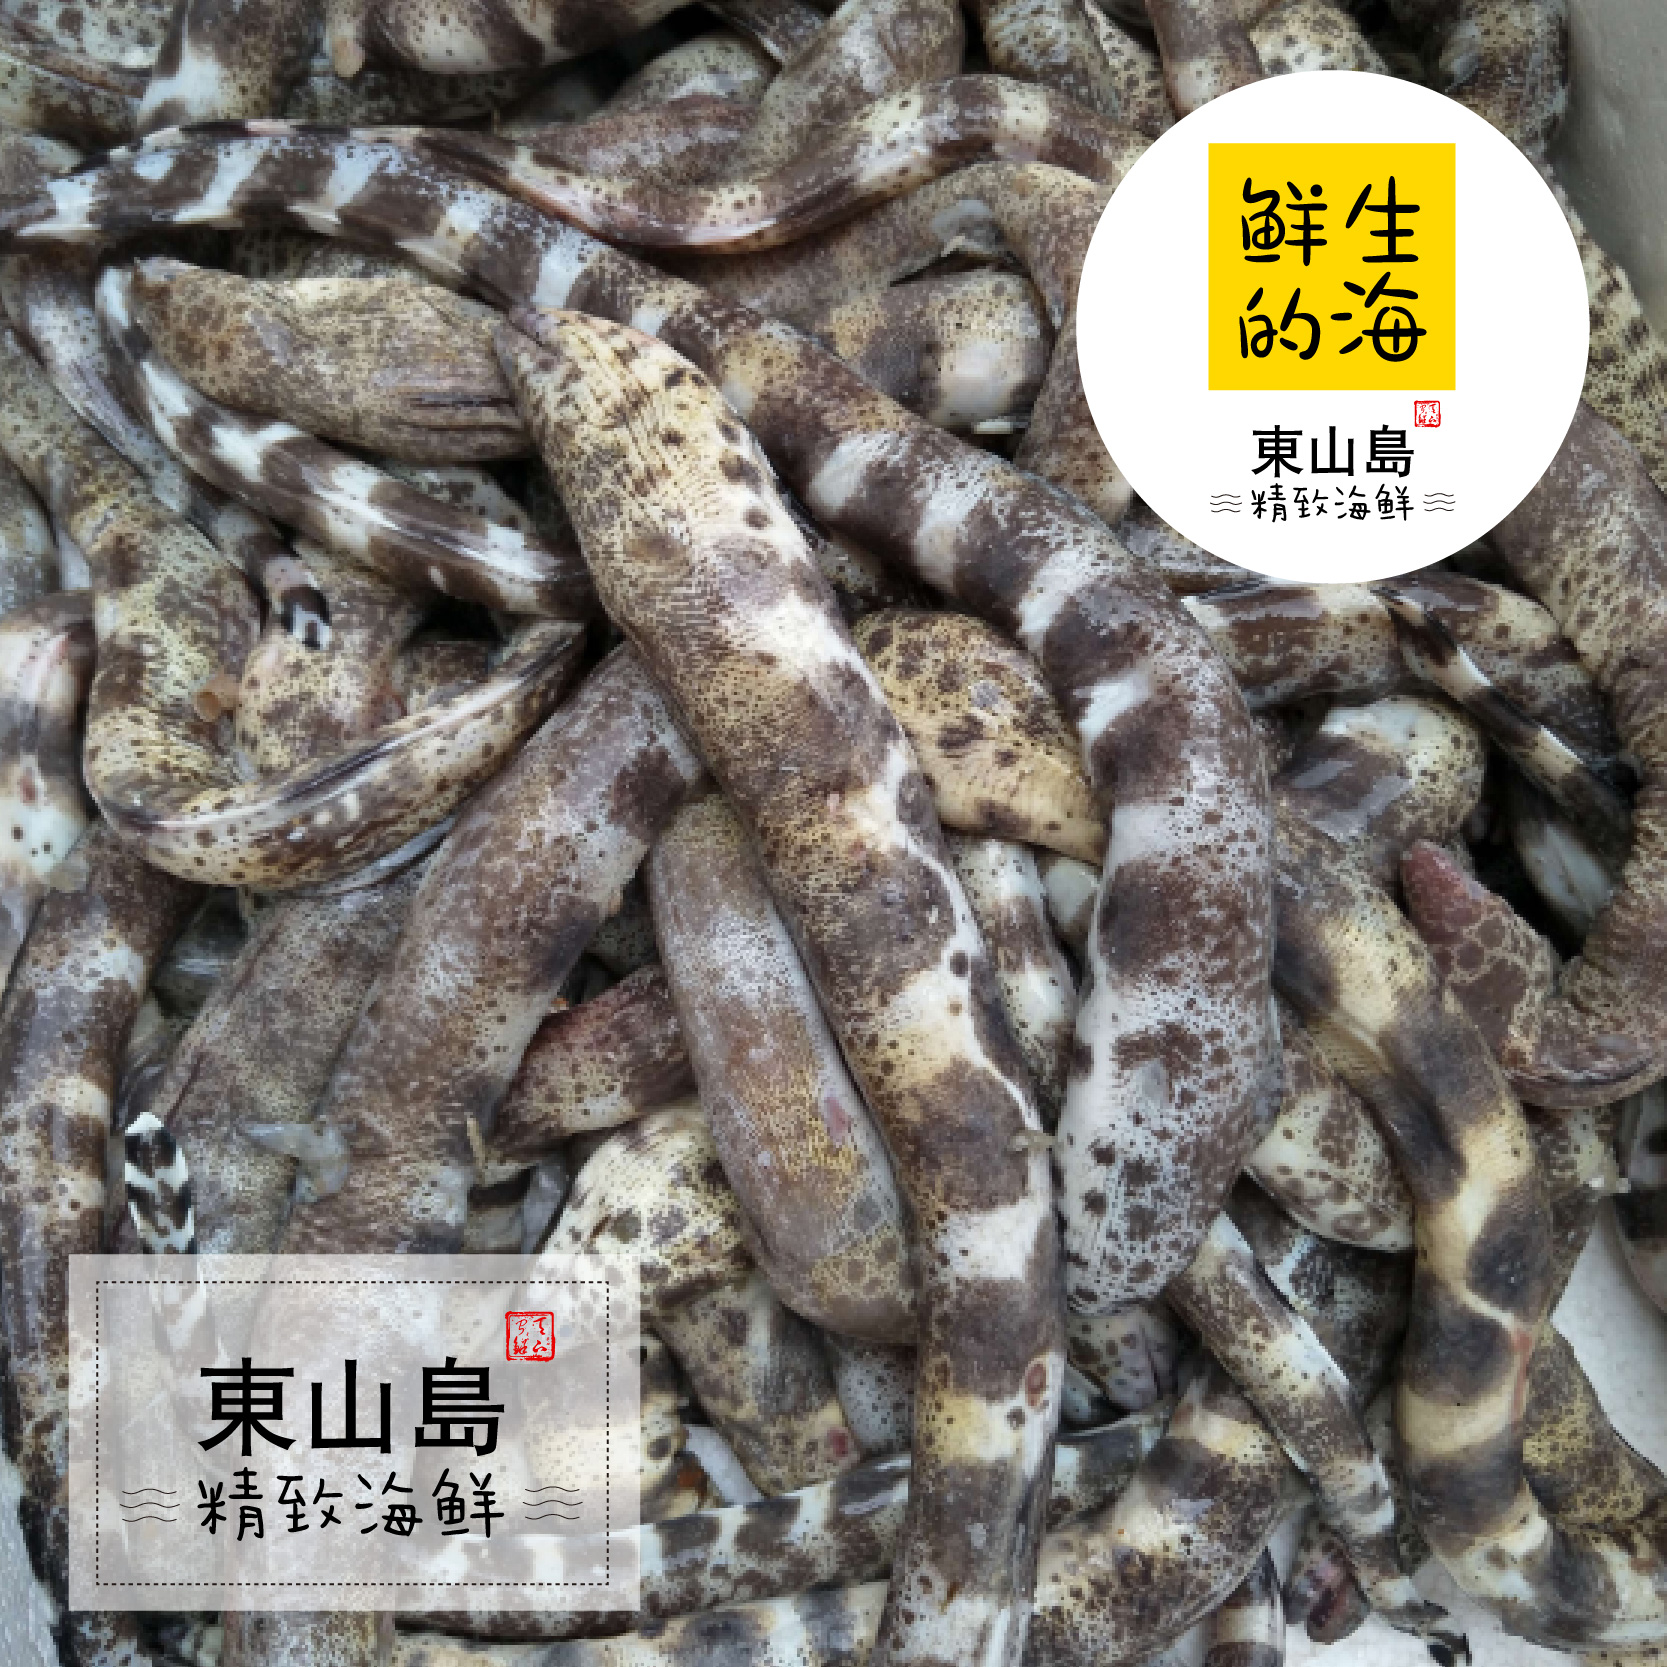 东山岛鲜生的海鲜水产活野生鳗鱼虎鳗石鳗金钱鳗胶原蛋白滋补佳品